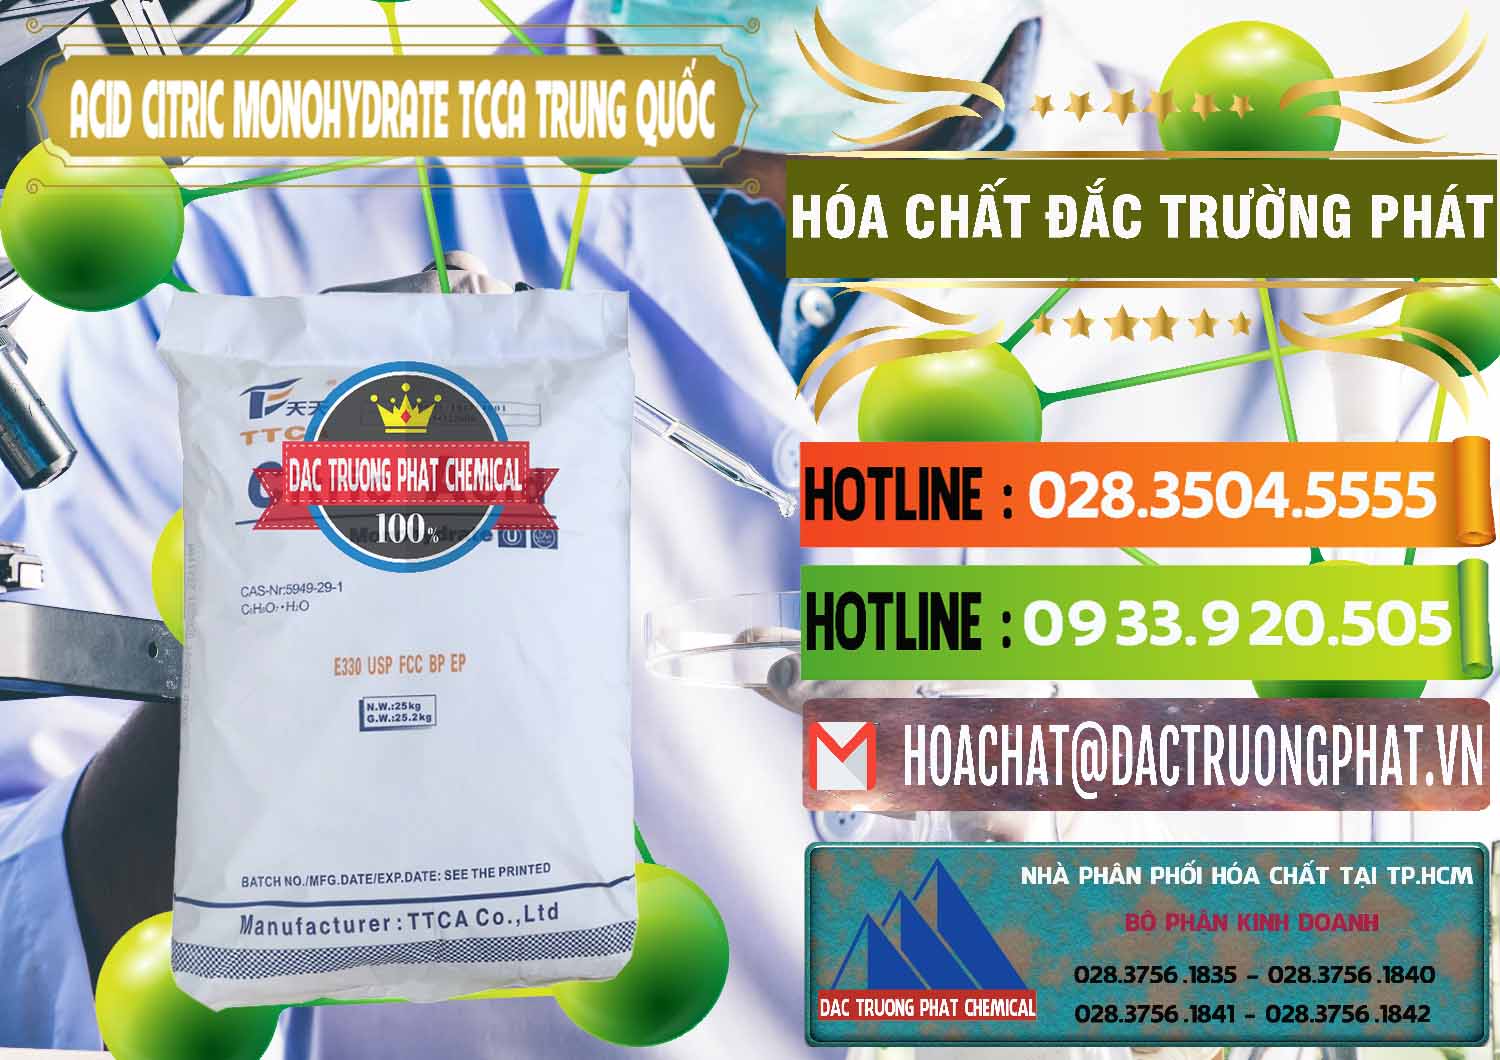 Cty bán ( phân phối ) Acid Citric - Axit Citric Monohydrate TCCA Trung Quốc China - 0441 - Nhà phân phối & cung ứng hóa chất tại TP.HCM - cungcaphoachat.com.vn